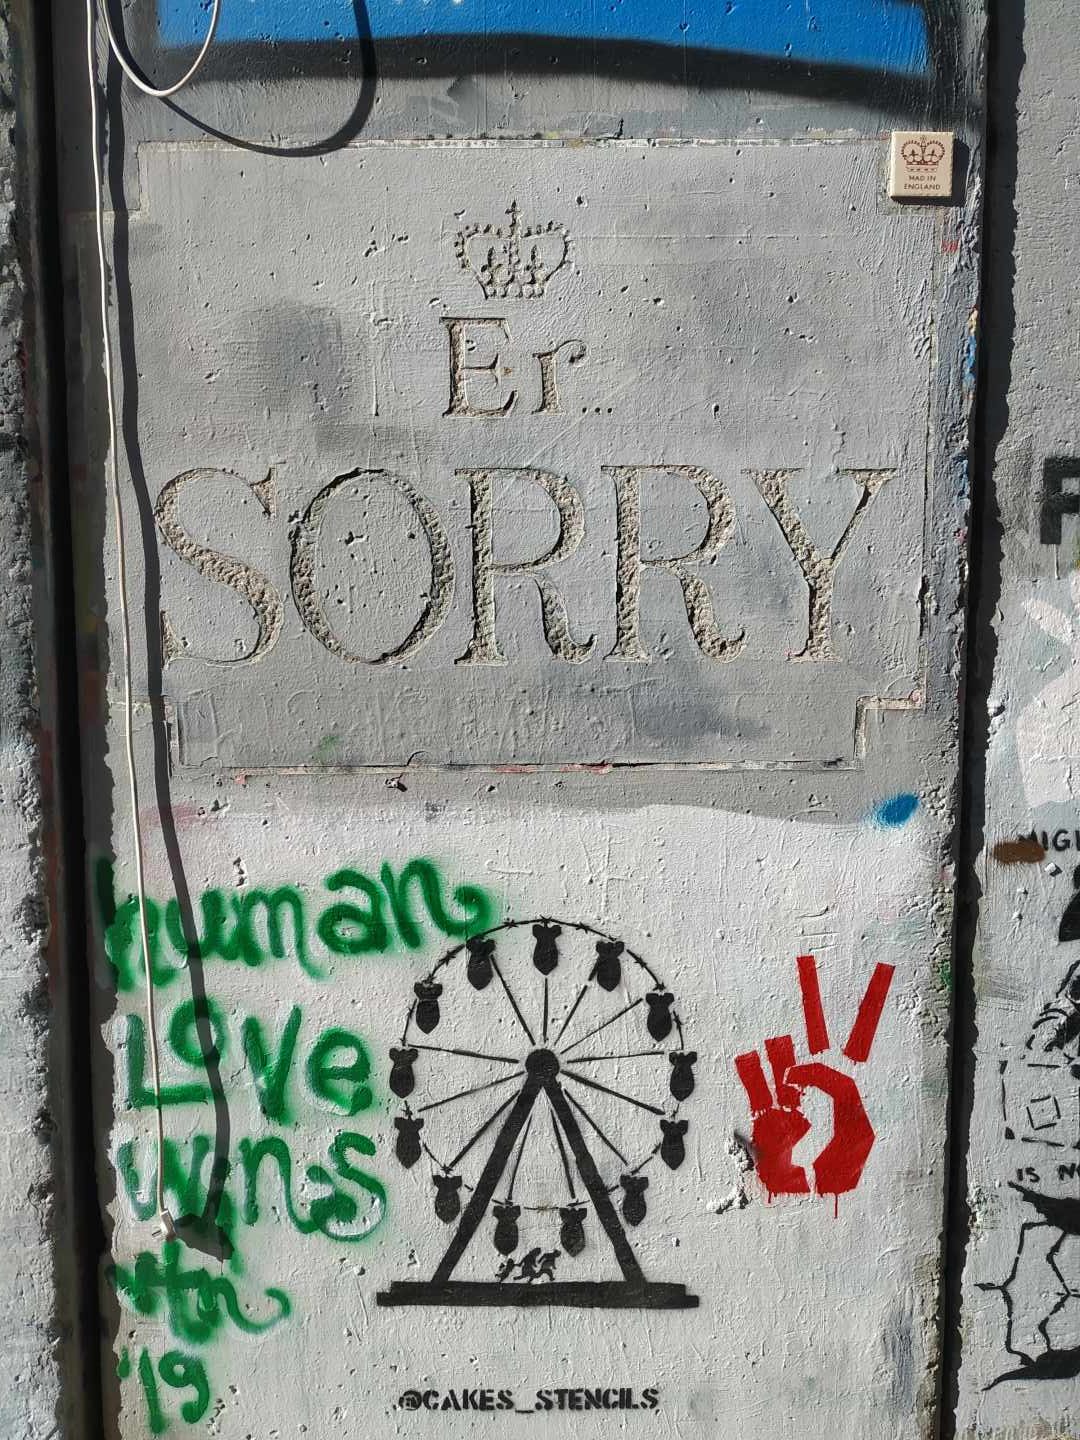 Obra 'Er Sorry' ("Eh, perdón") de Banksy coincidiendo con el centenario de la Declaración de Balfour y una noria de bombas pintada por Cake $.